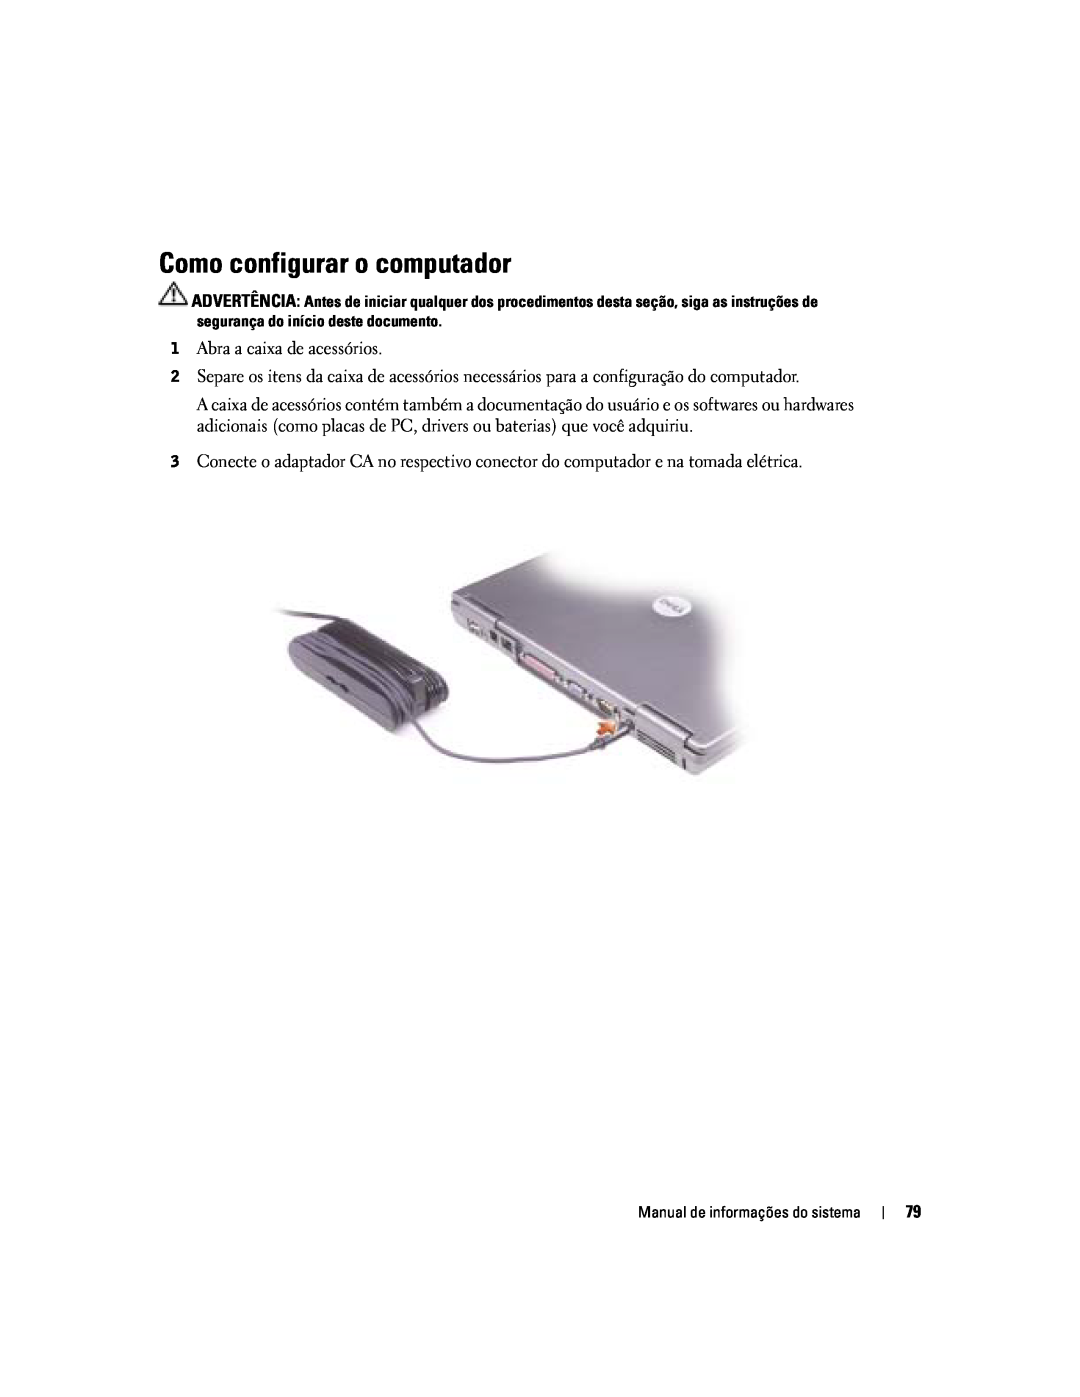 Dell D505 manual Como configurar o computador 